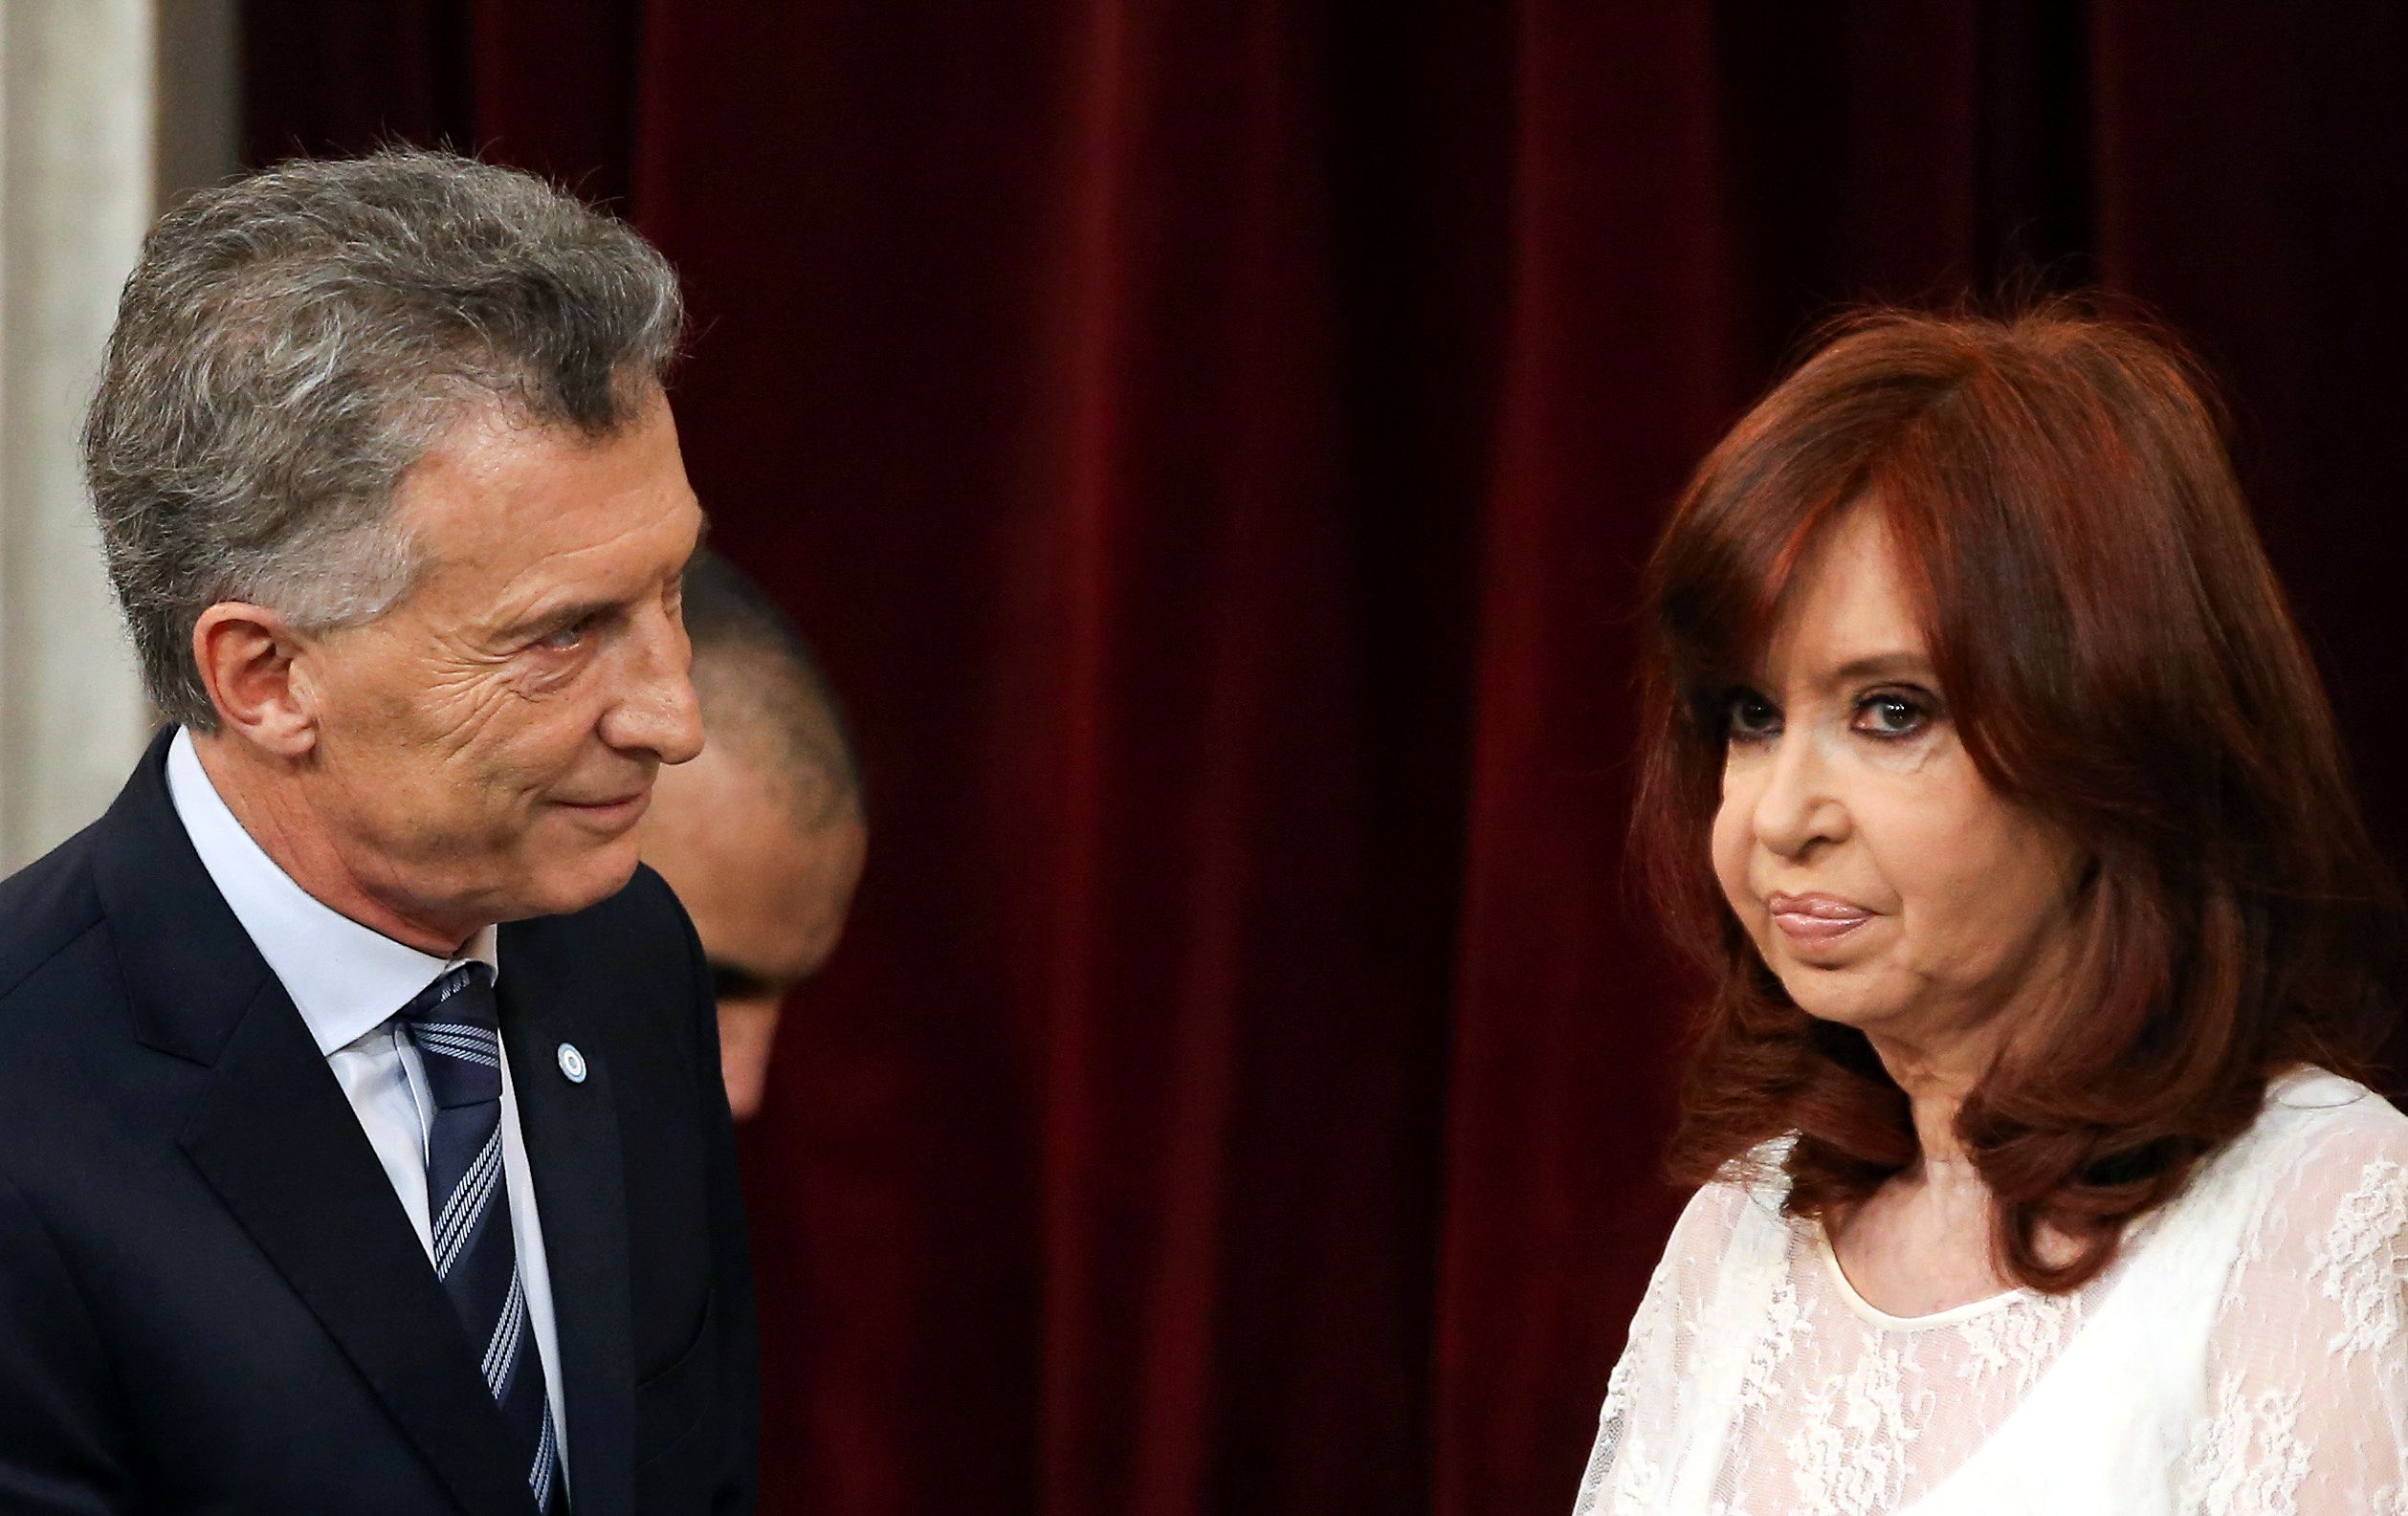 Cristina Fernández de Kirchner y Mauricio Macri se saludan con frialdad durante la asunción presidencial de Alberto Fernández